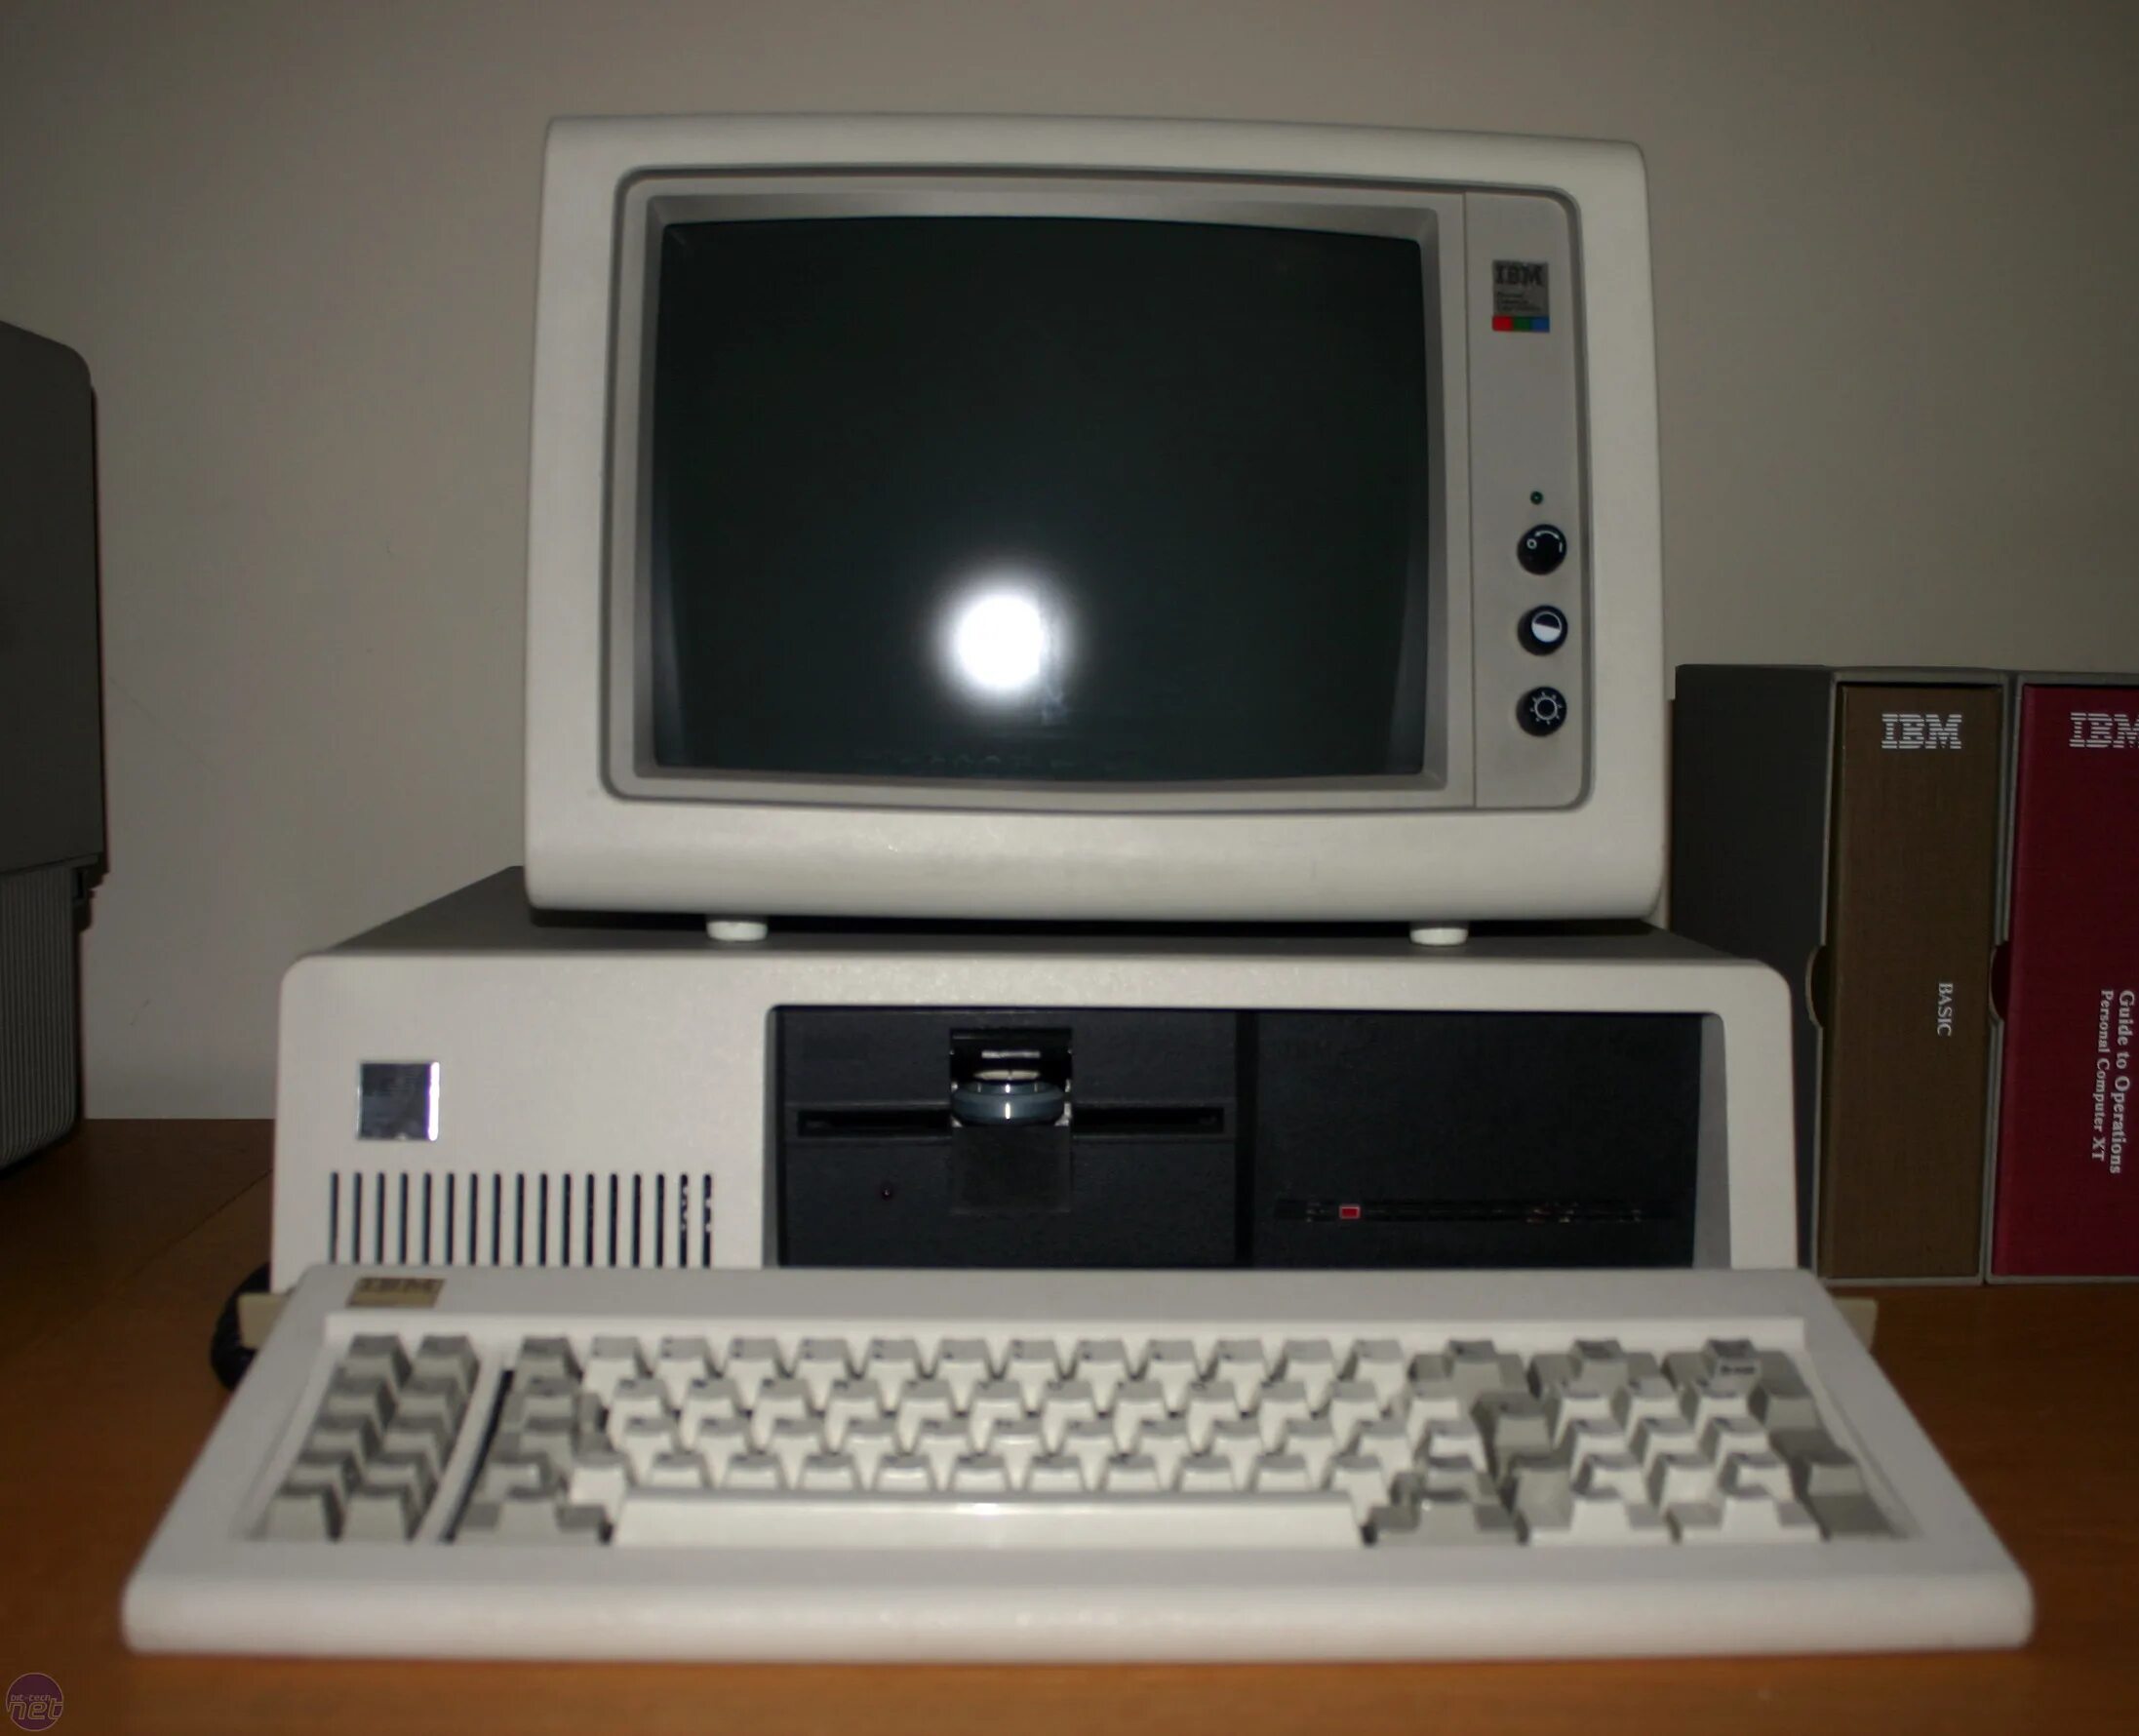 4 поколение купить. Персональный компьютер IBM PC/XT. IBM PC 5150. IBM PC/XT (1983). Первый персональный компьютер IBM 5150.